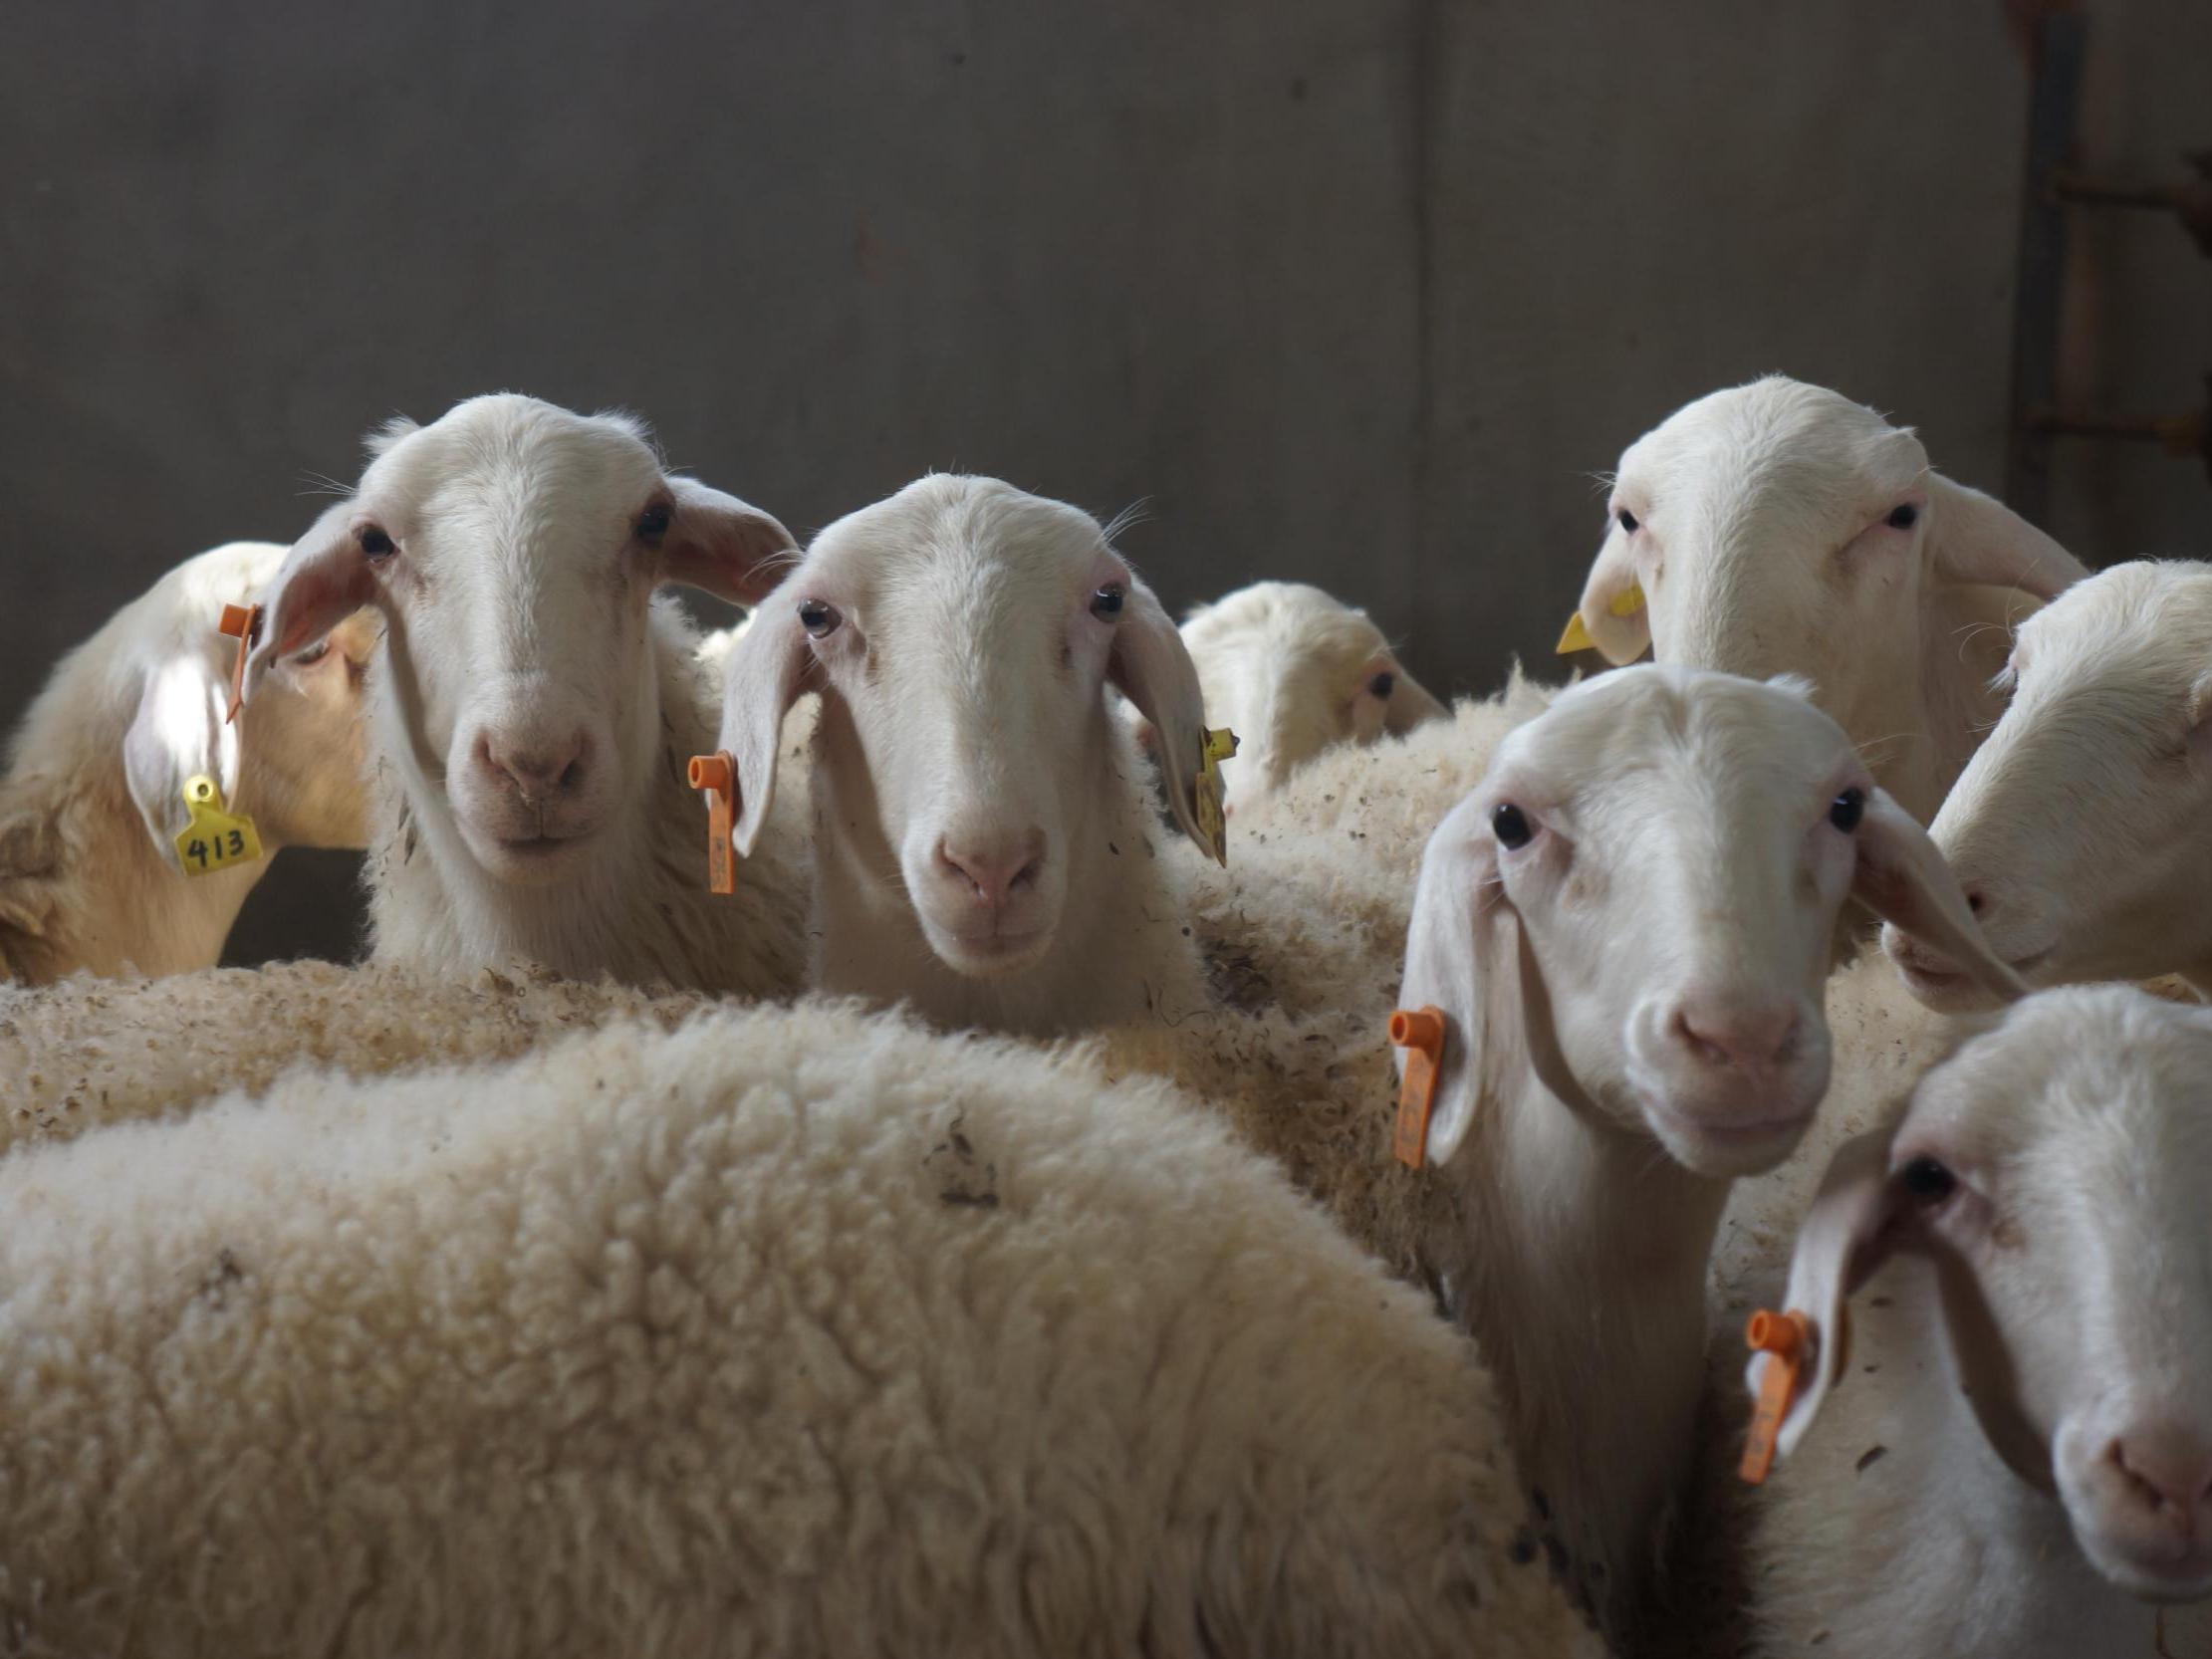 小尾寒羊萨福克羊夏洛莱种公羊白山羊黑山羊波尔山羊以客户需求和产品